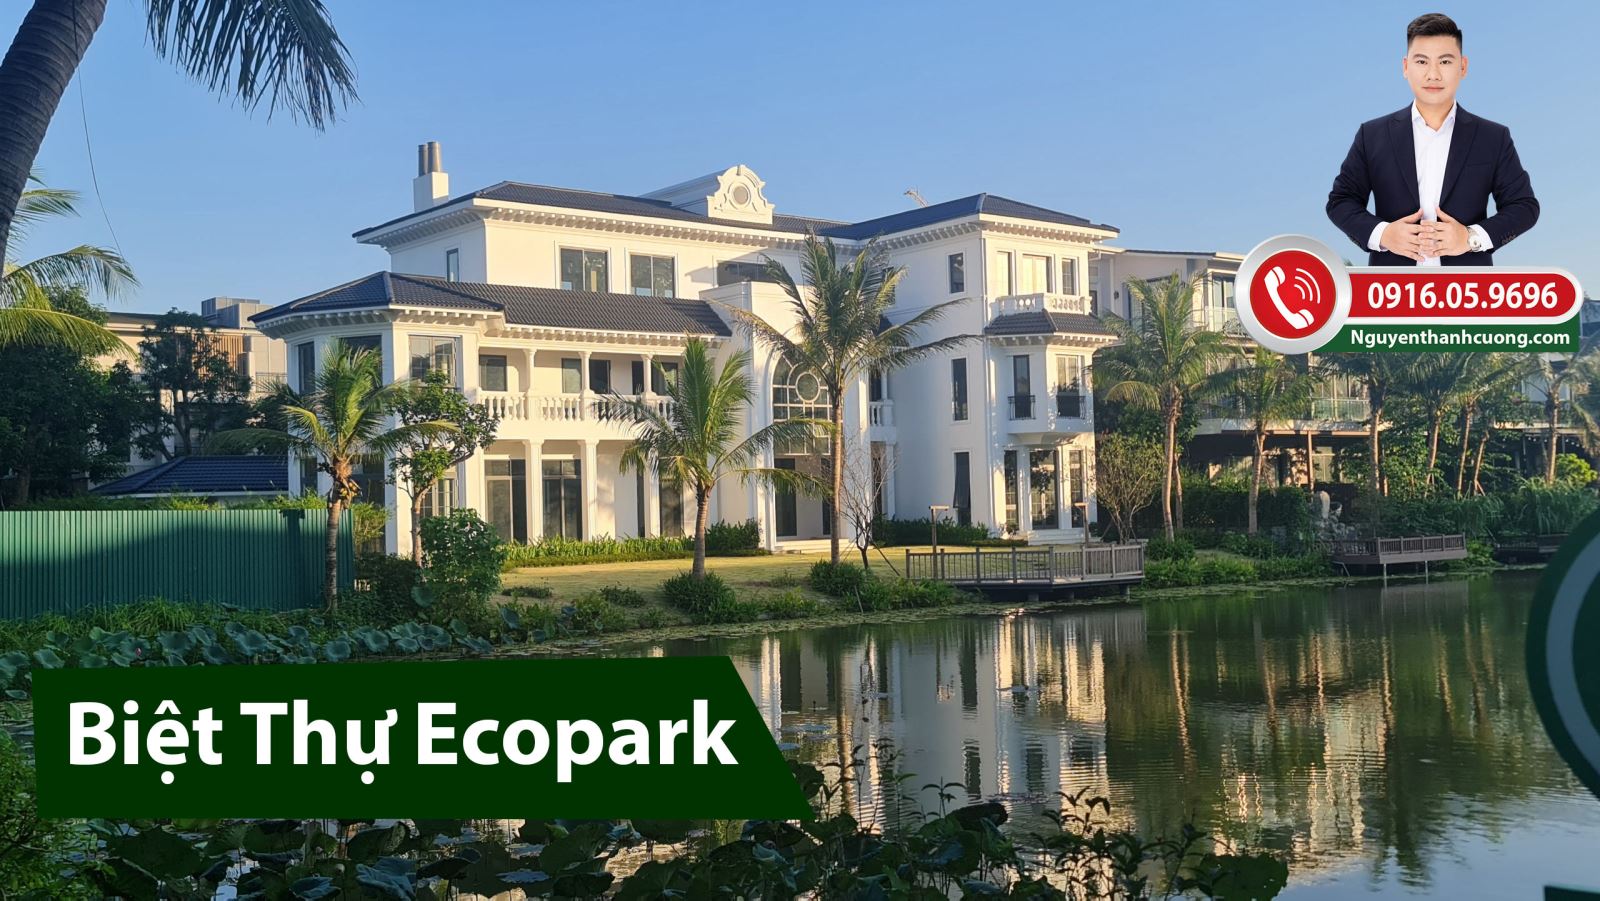 Báo giá Biệt thự Ecopark Hưng Yên